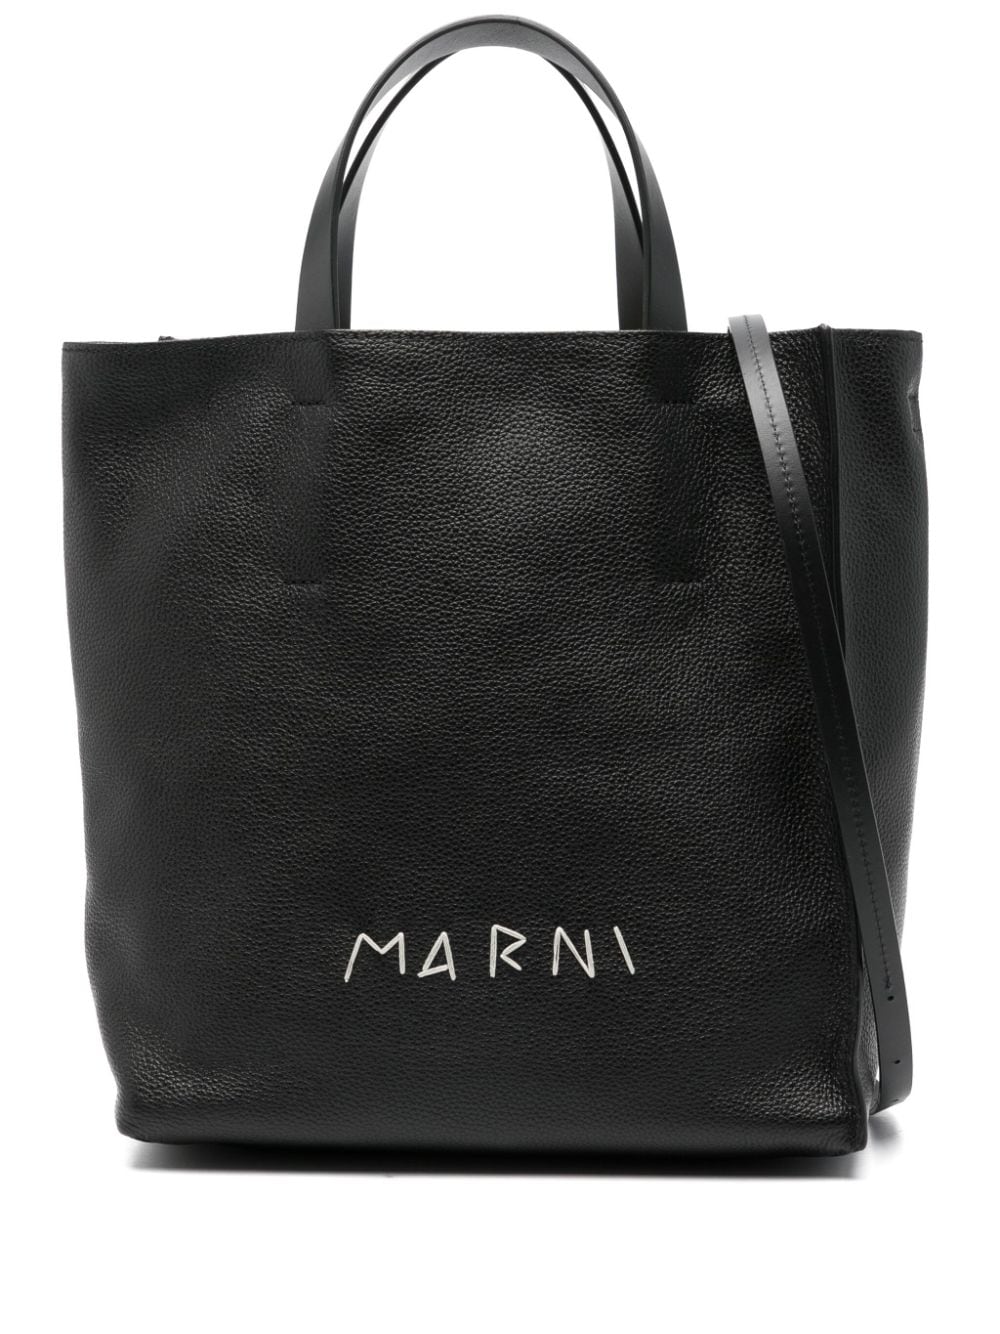 Marni logo-embroidered tote bag - Black von Marni